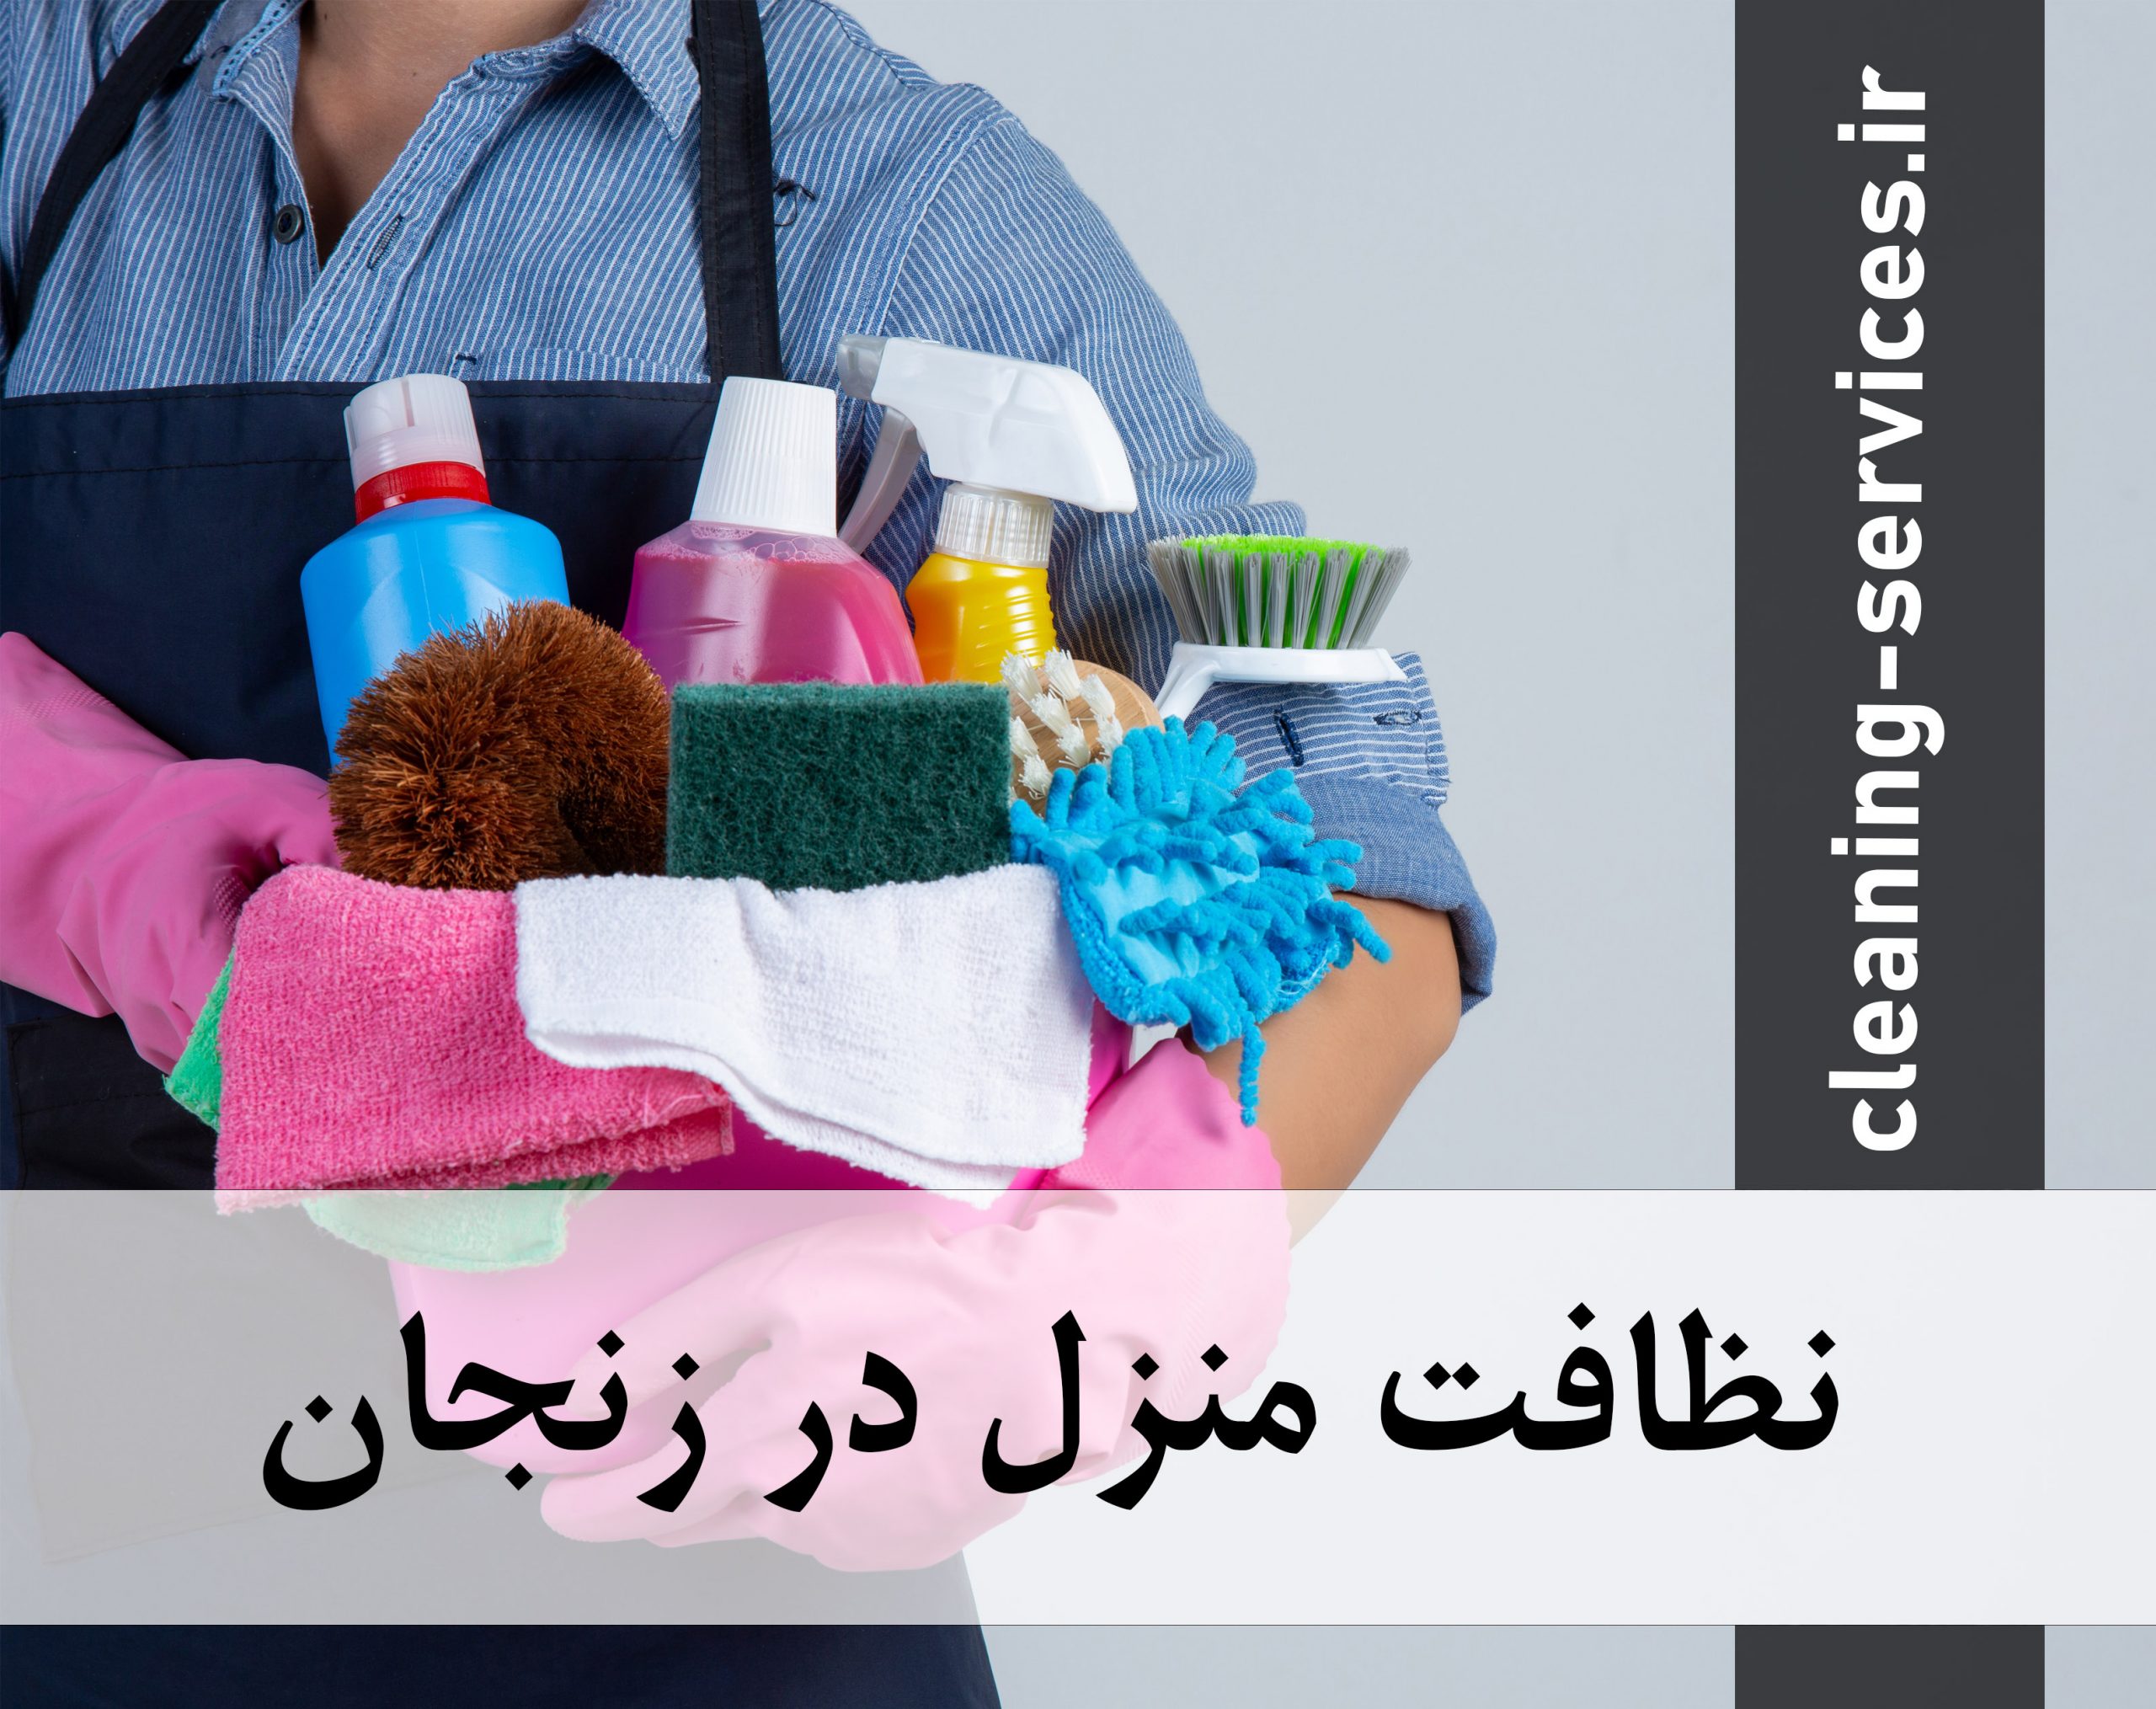 نظافت منزل در زنجان